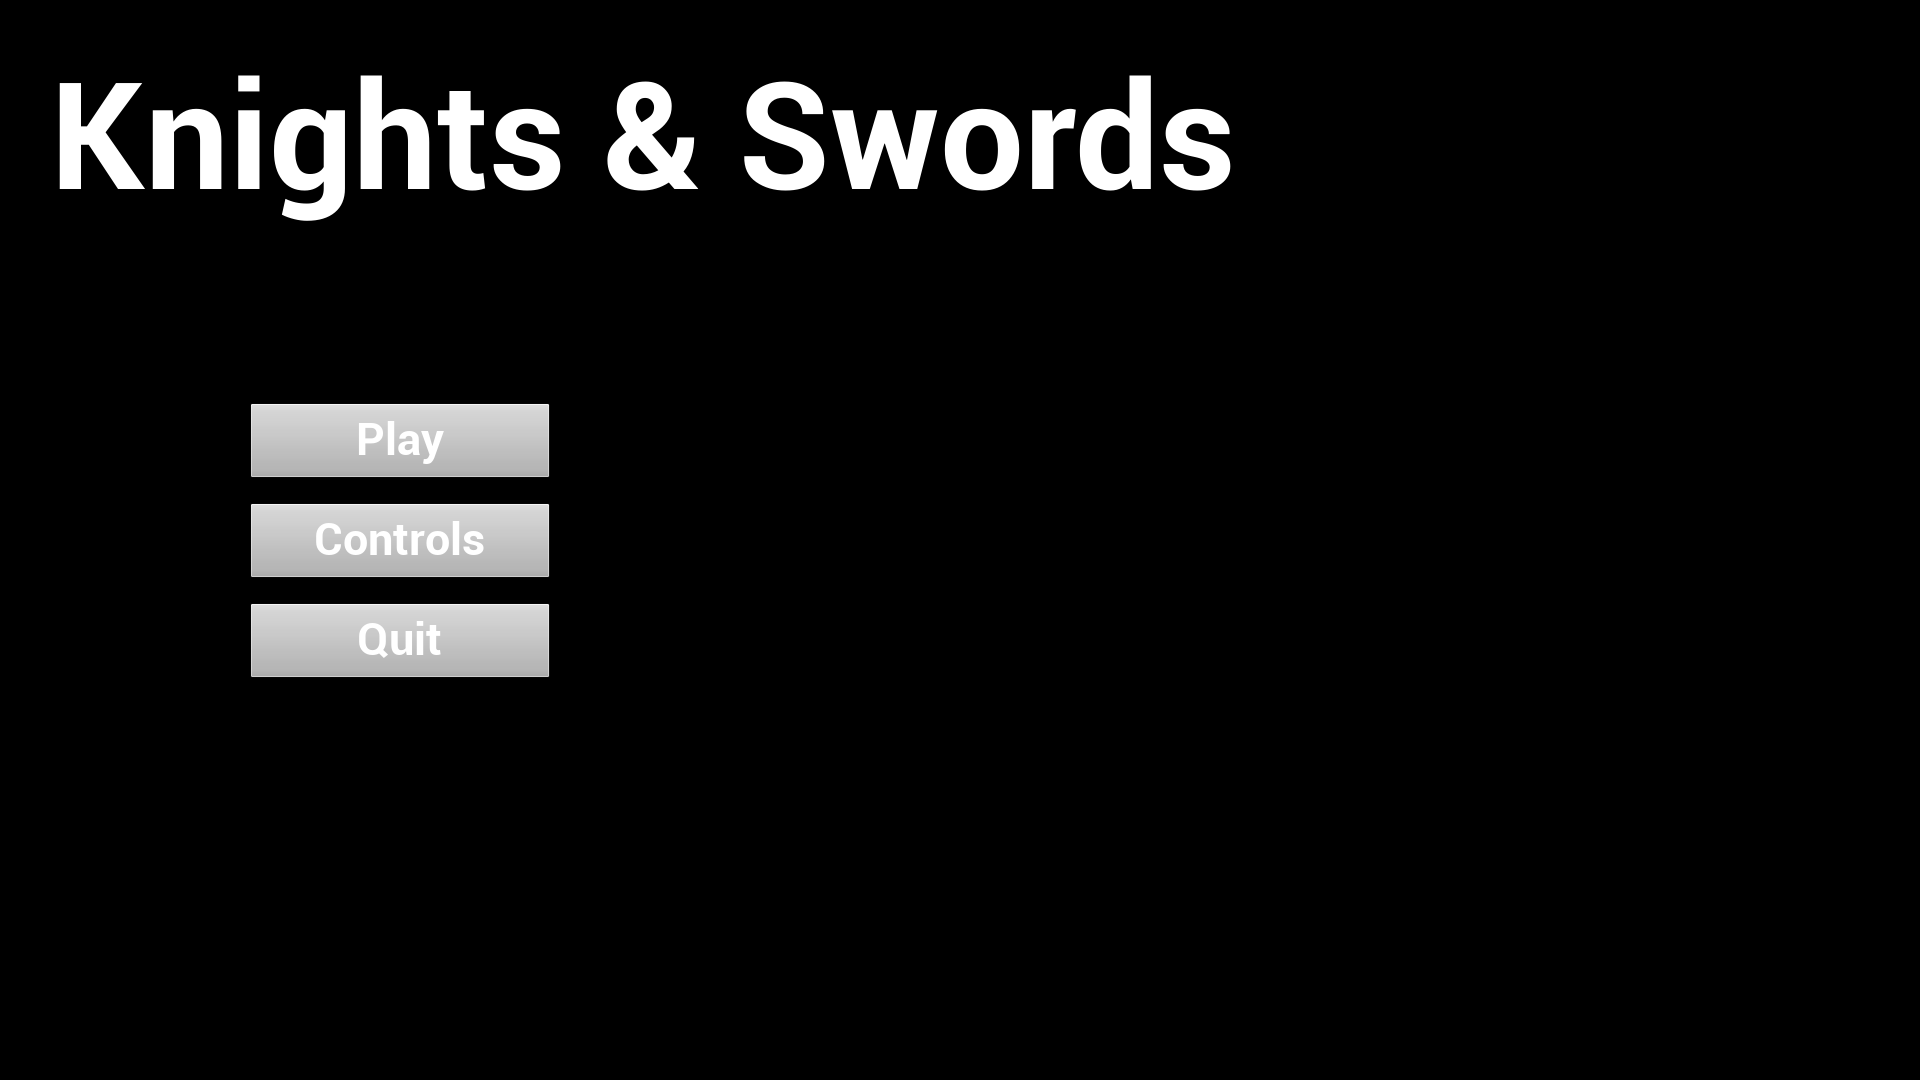 Knights & Swords